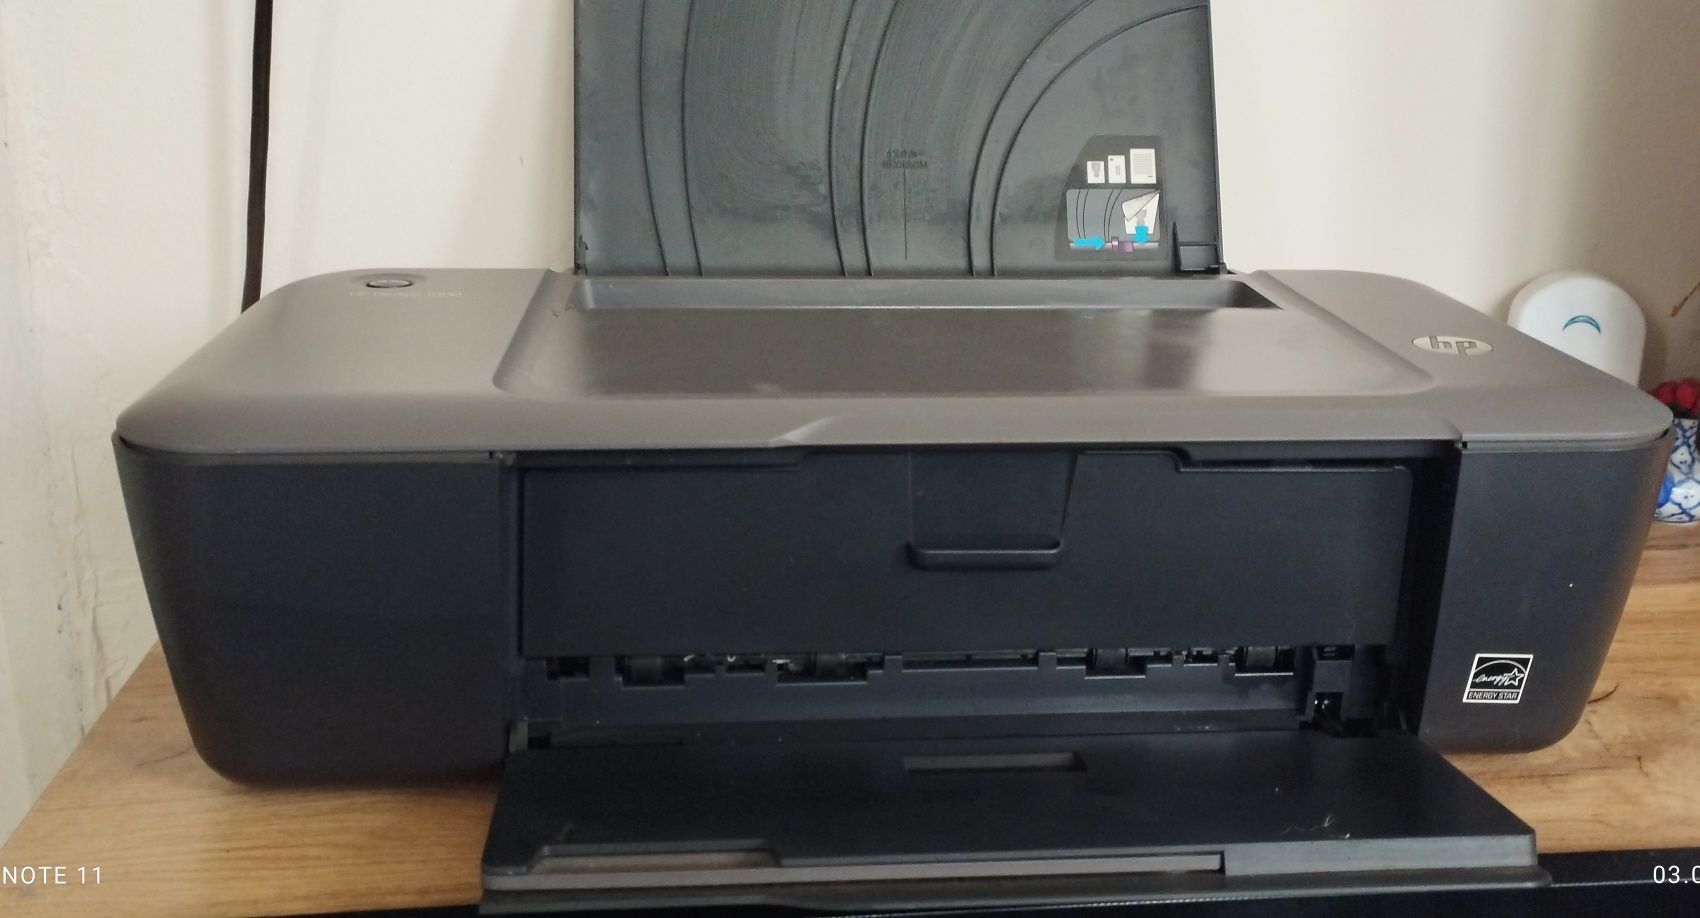 Мастиленоструен цветен принтер Hp Deskjet 1000